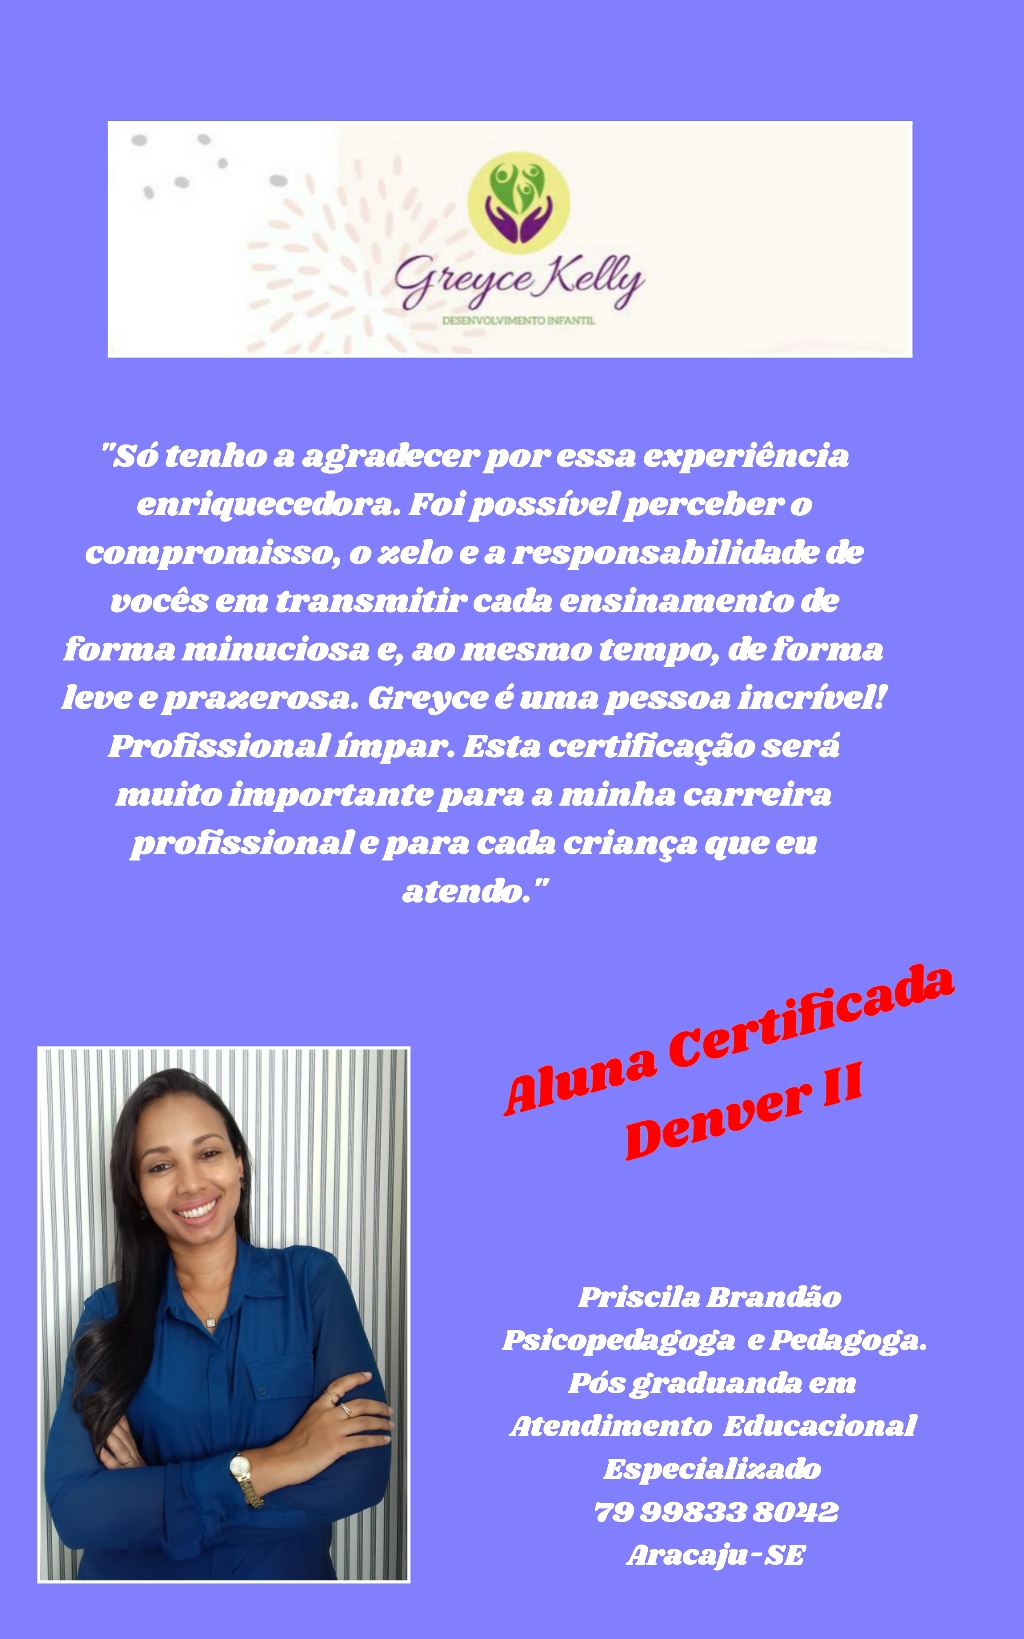 Priscila Brandão